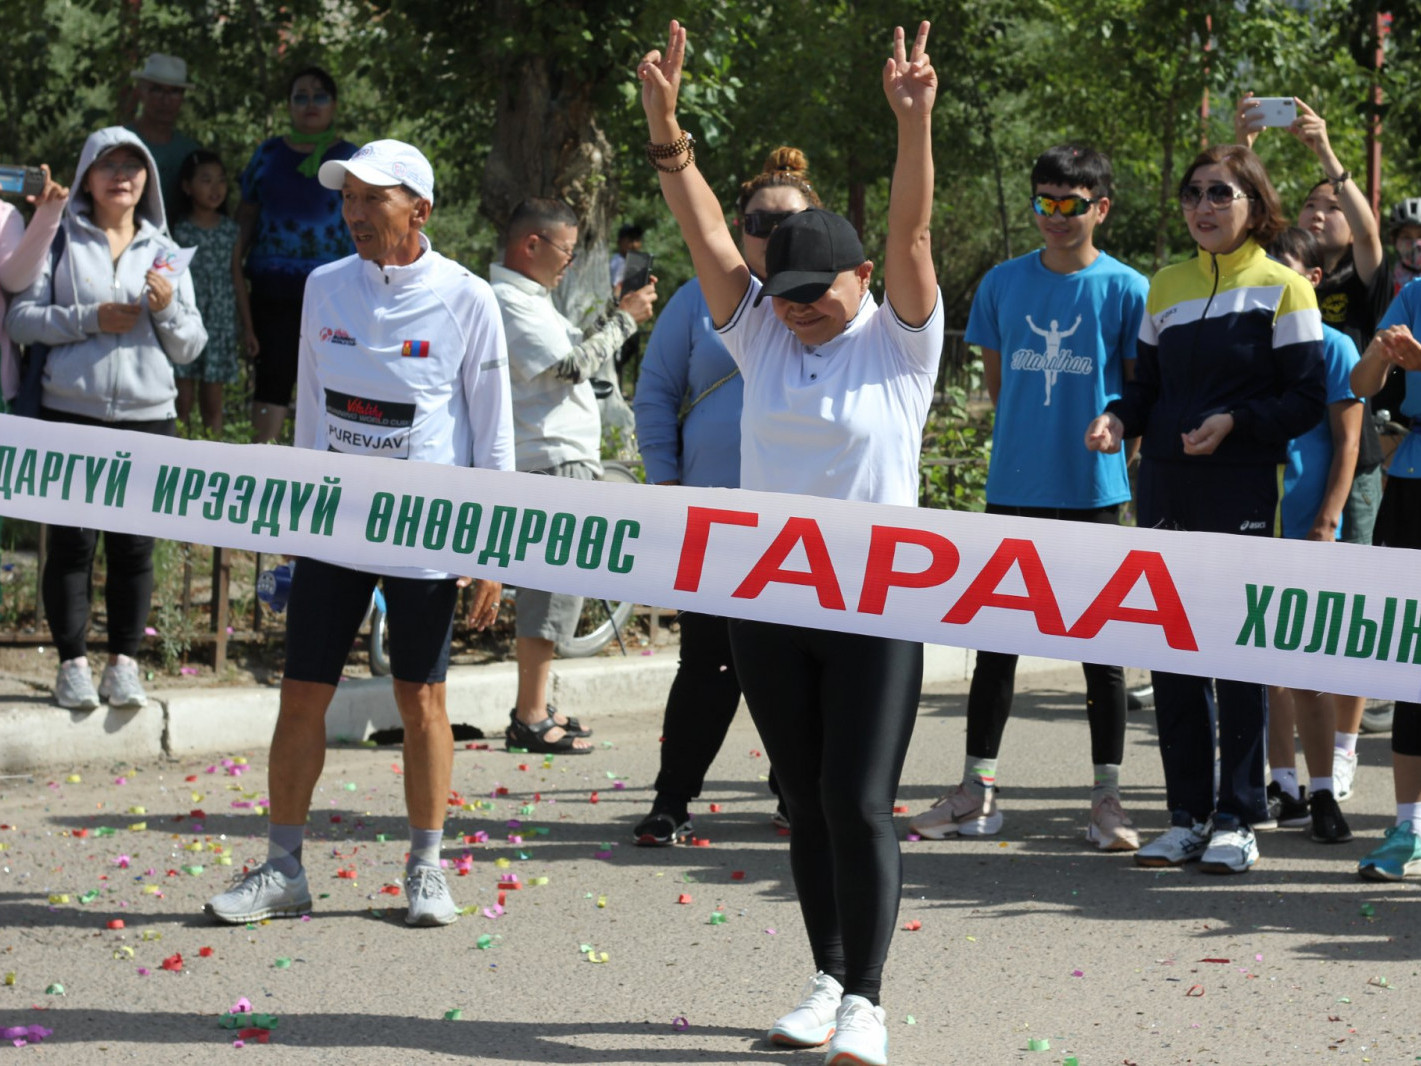 ВИДЕО: Дорнод аймгийн сувилагч эмэгтэй УБ хот хүртэл 650 км гүйлт хийхээр замдаа гарлаа 